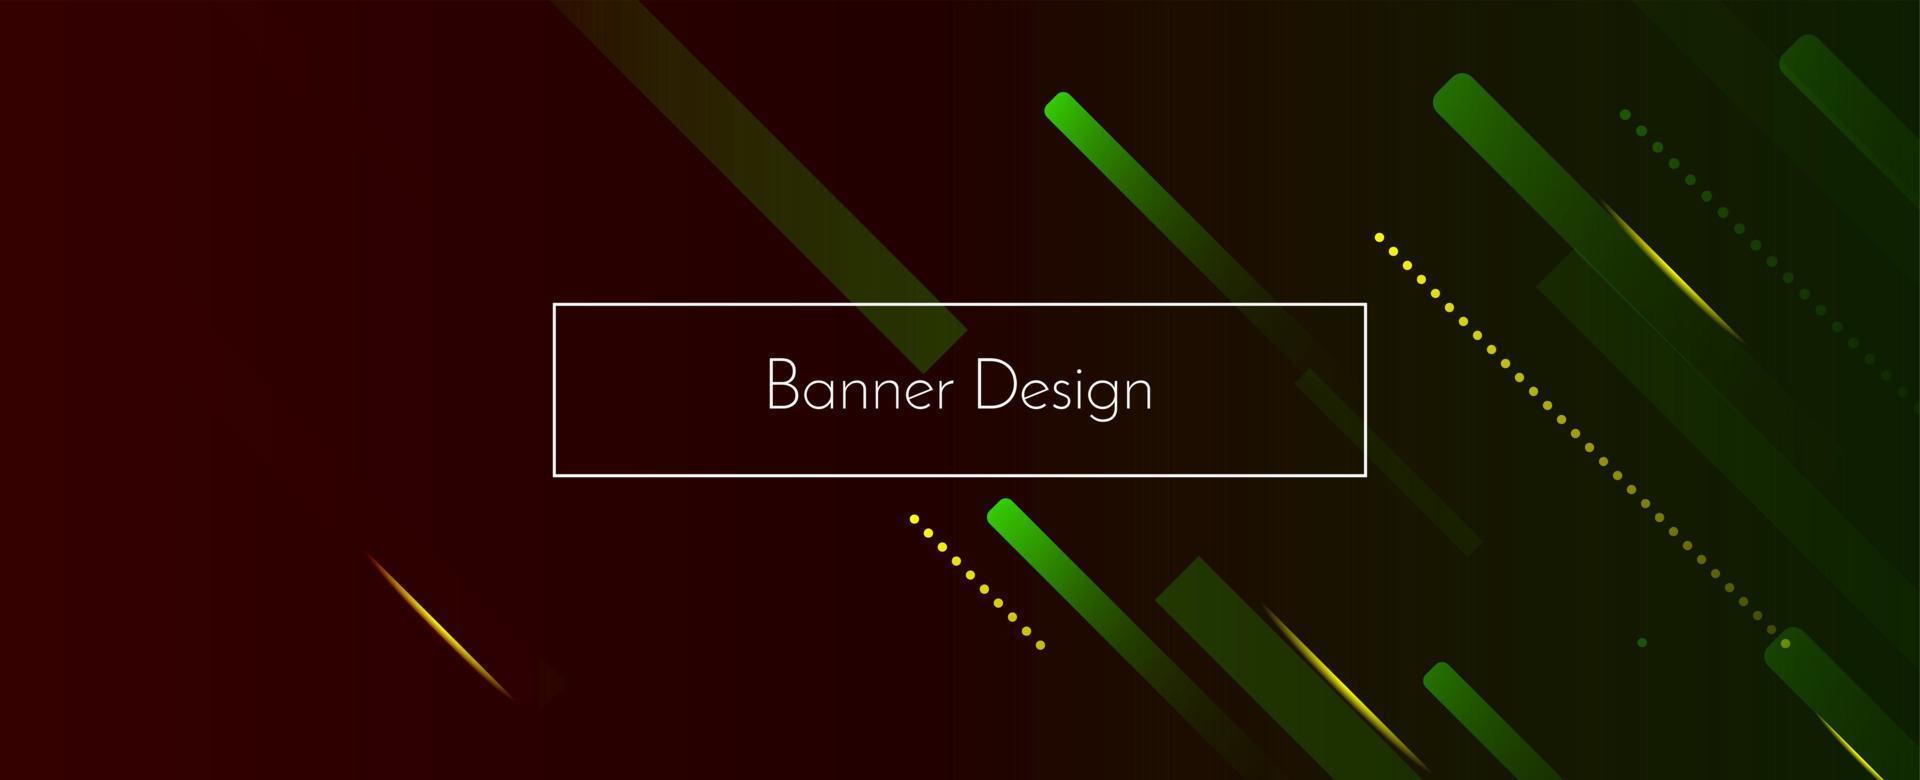 abstrakte geometrische moderne dekorative Design Banner Muster Hintergrund vektor